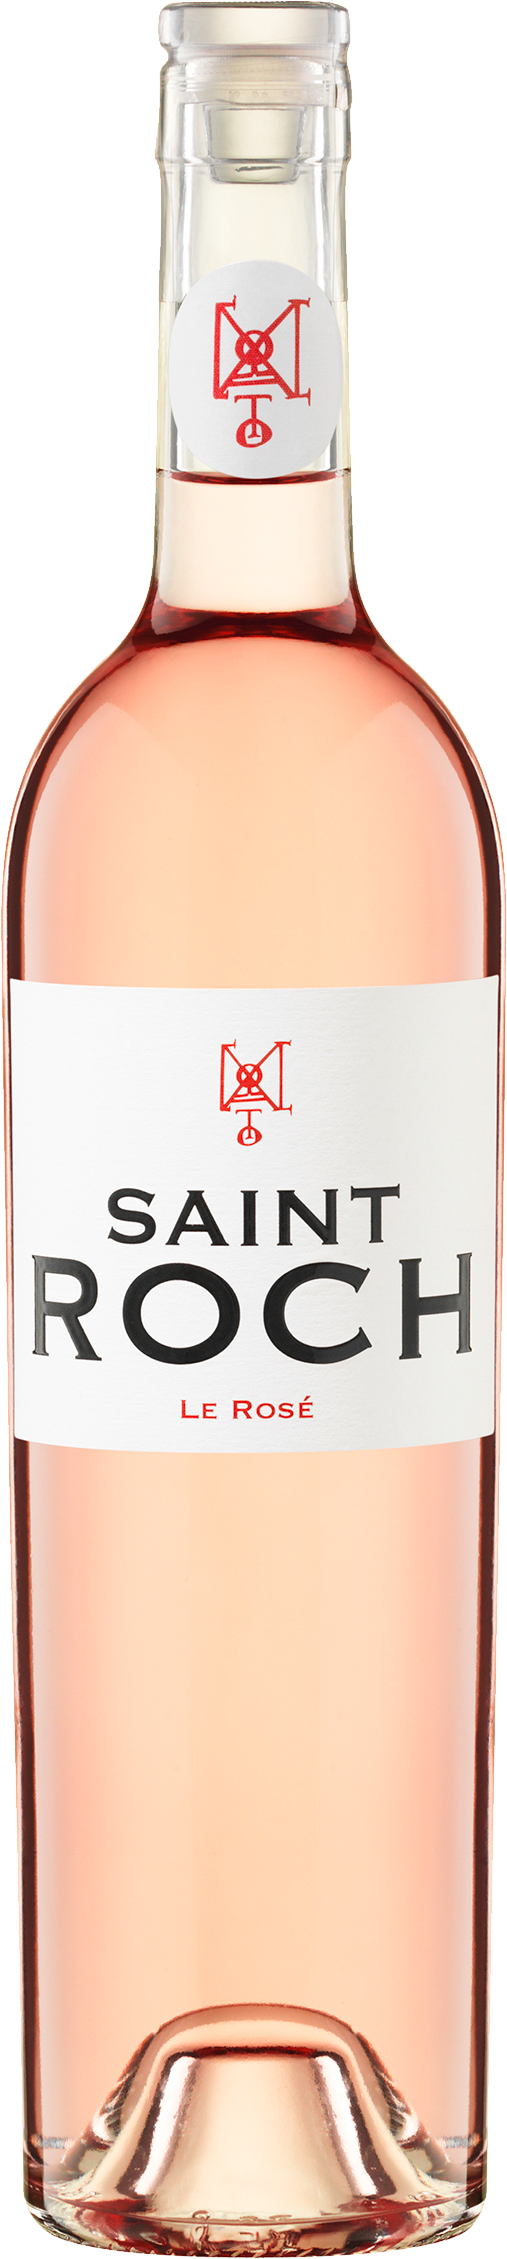 Château Saint Roch - Le Rosé AOP rosé